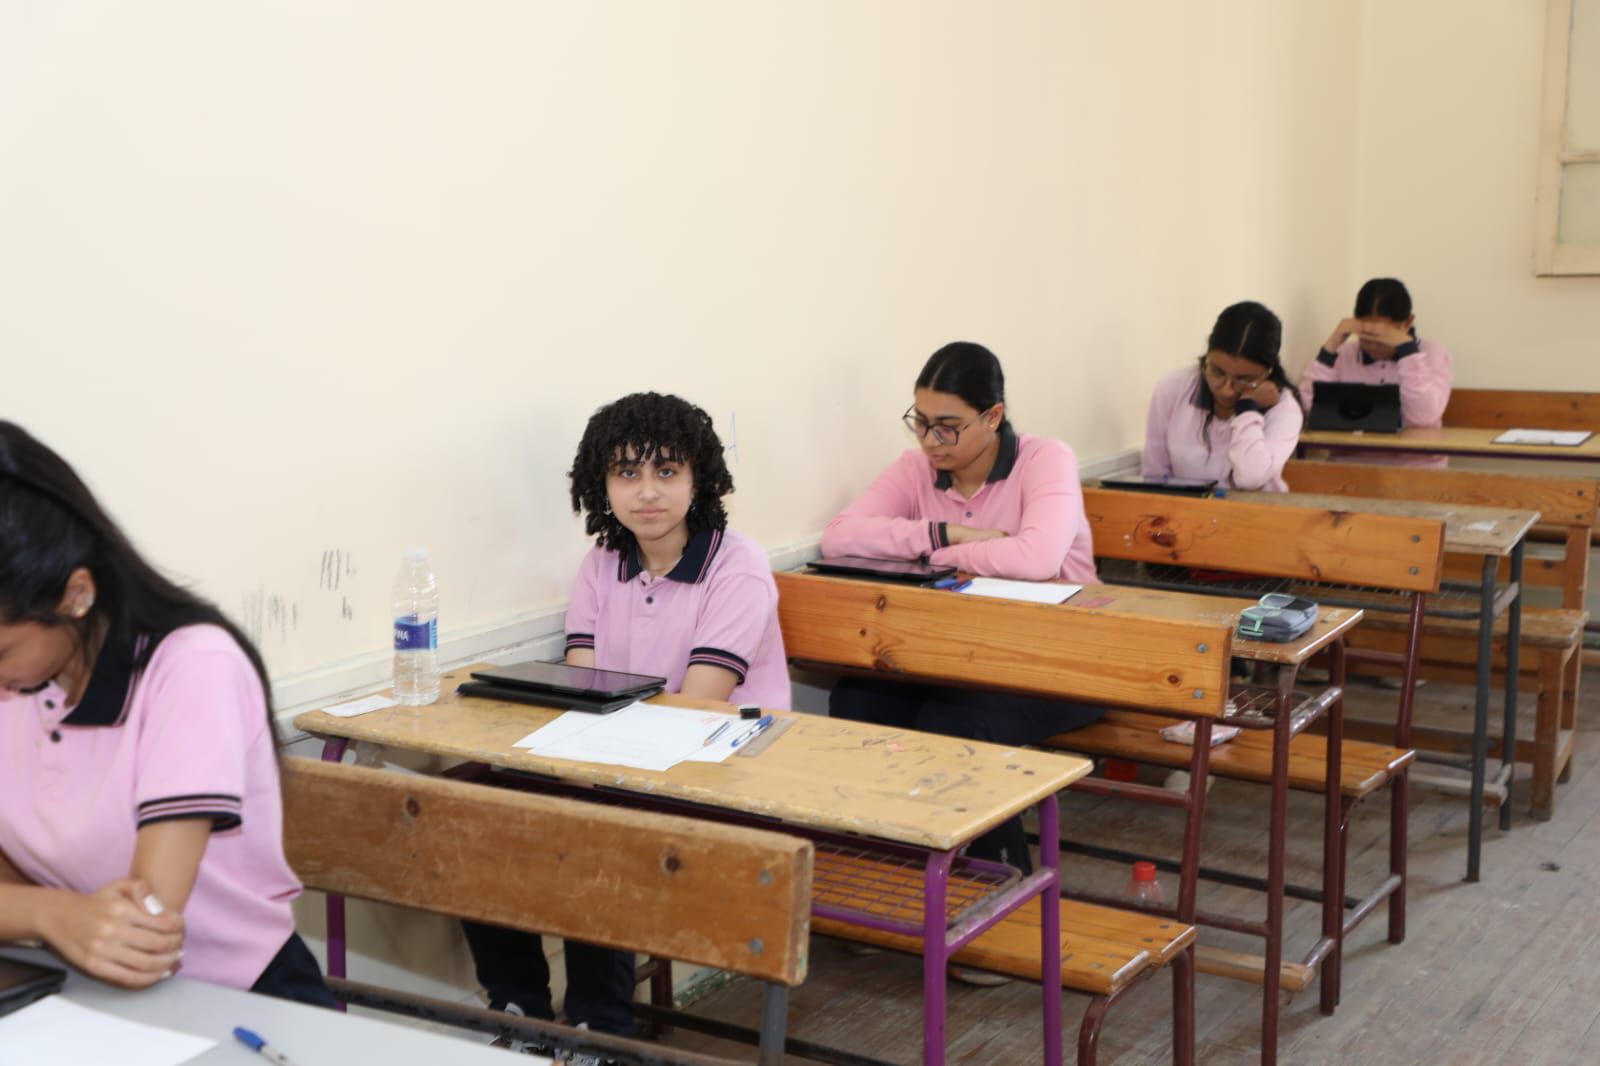 الإمتحانات بمدرسة بورسعيد الثانوية بنات